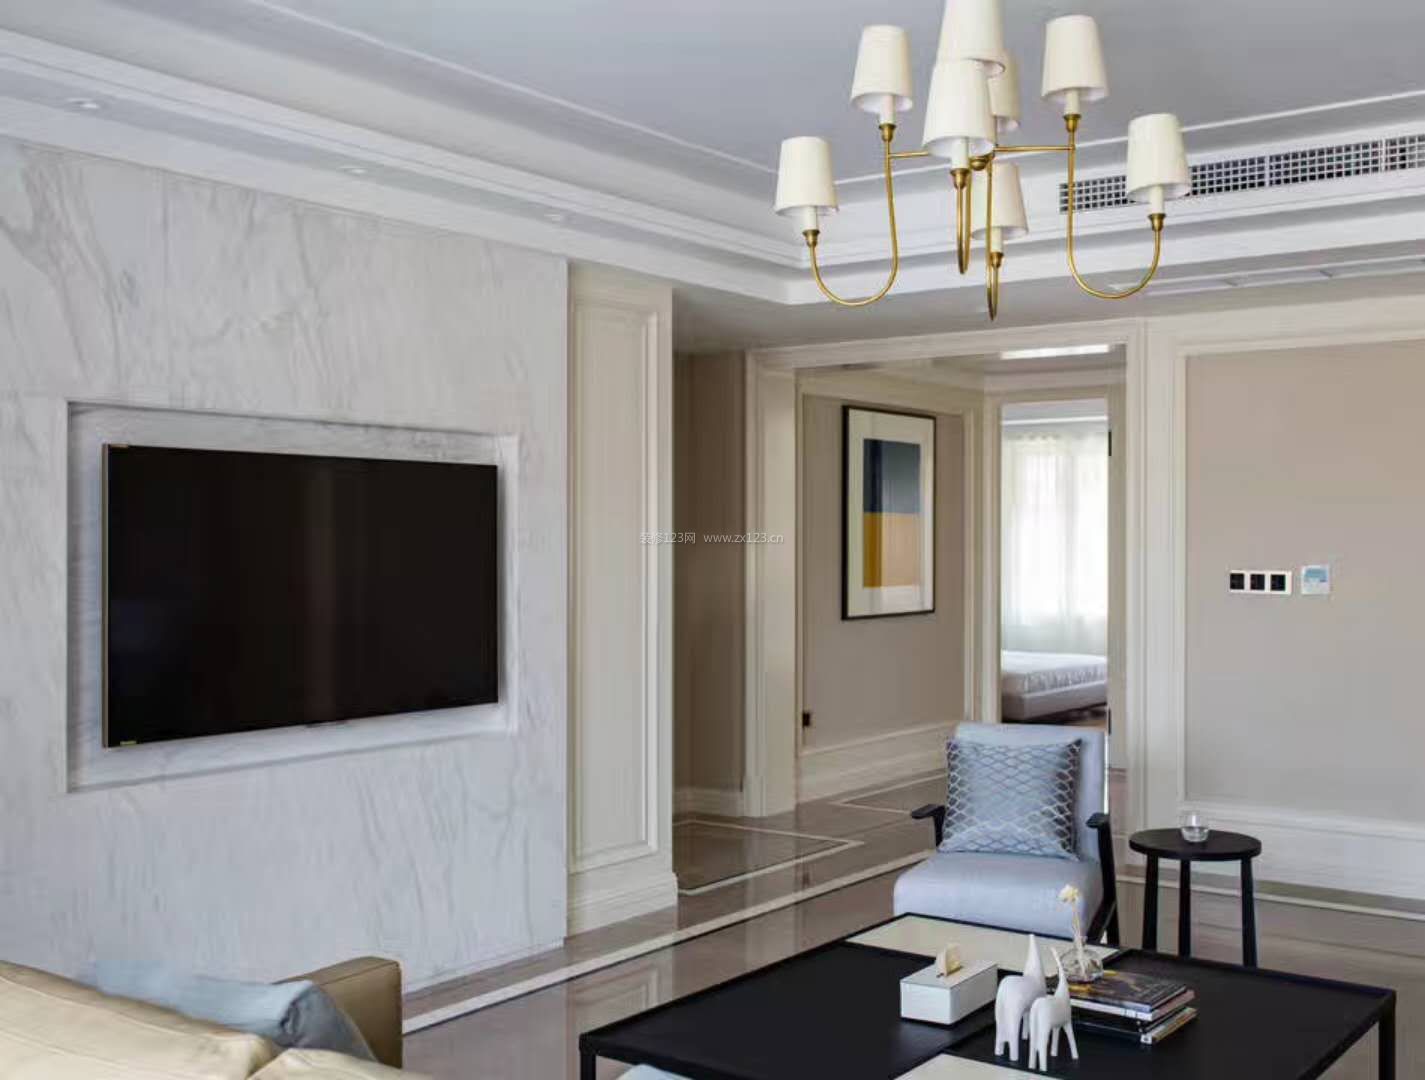 现代美式客厅装修效果图 简易电视墙效果图